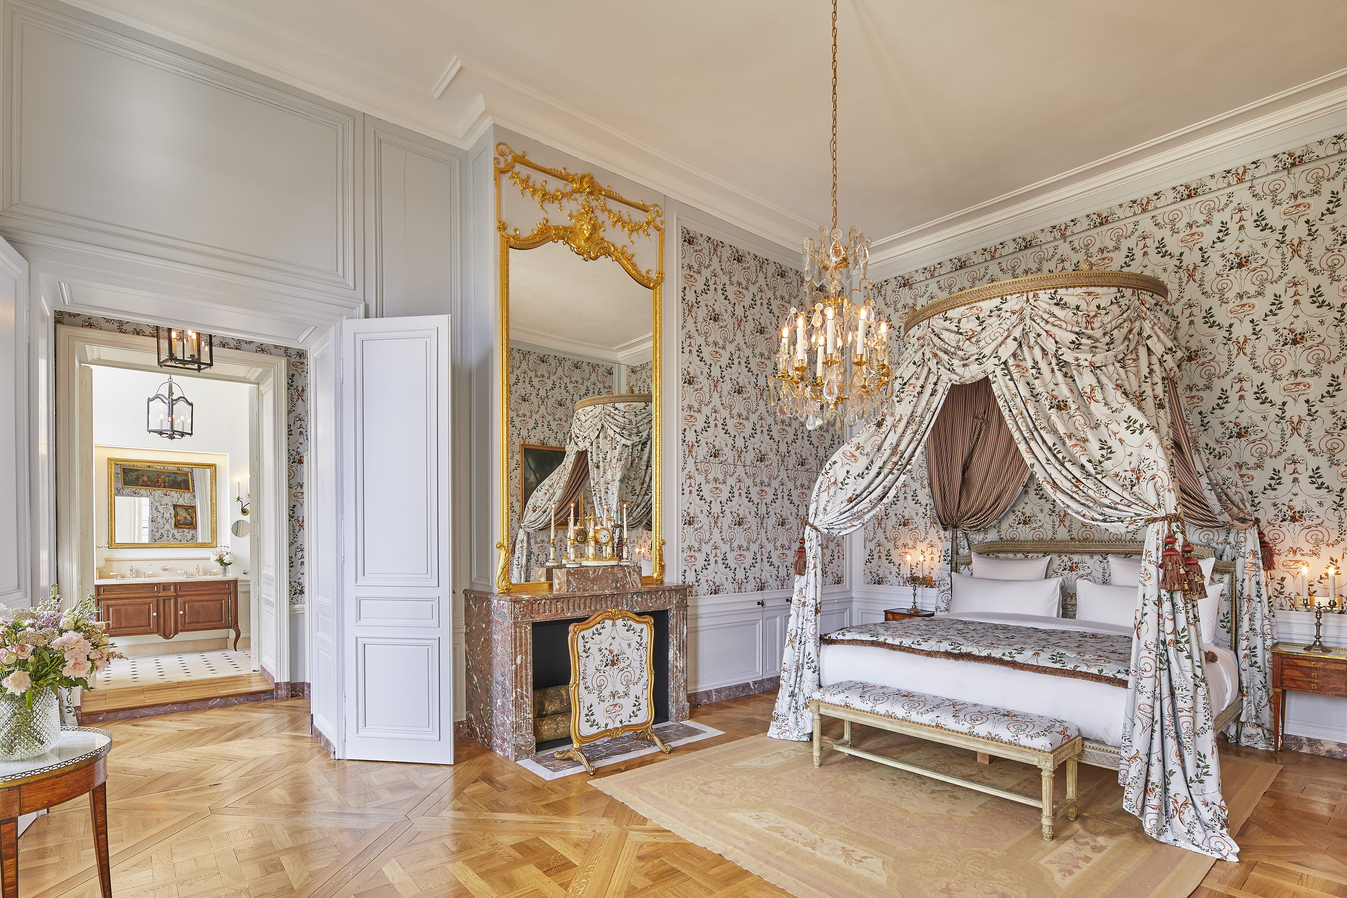 復刻 18 世紀凡爾賽宮設計風情的 Le Grand Contrôle， 以懷舊又典雅的客房設計，再現王室生活記憶。